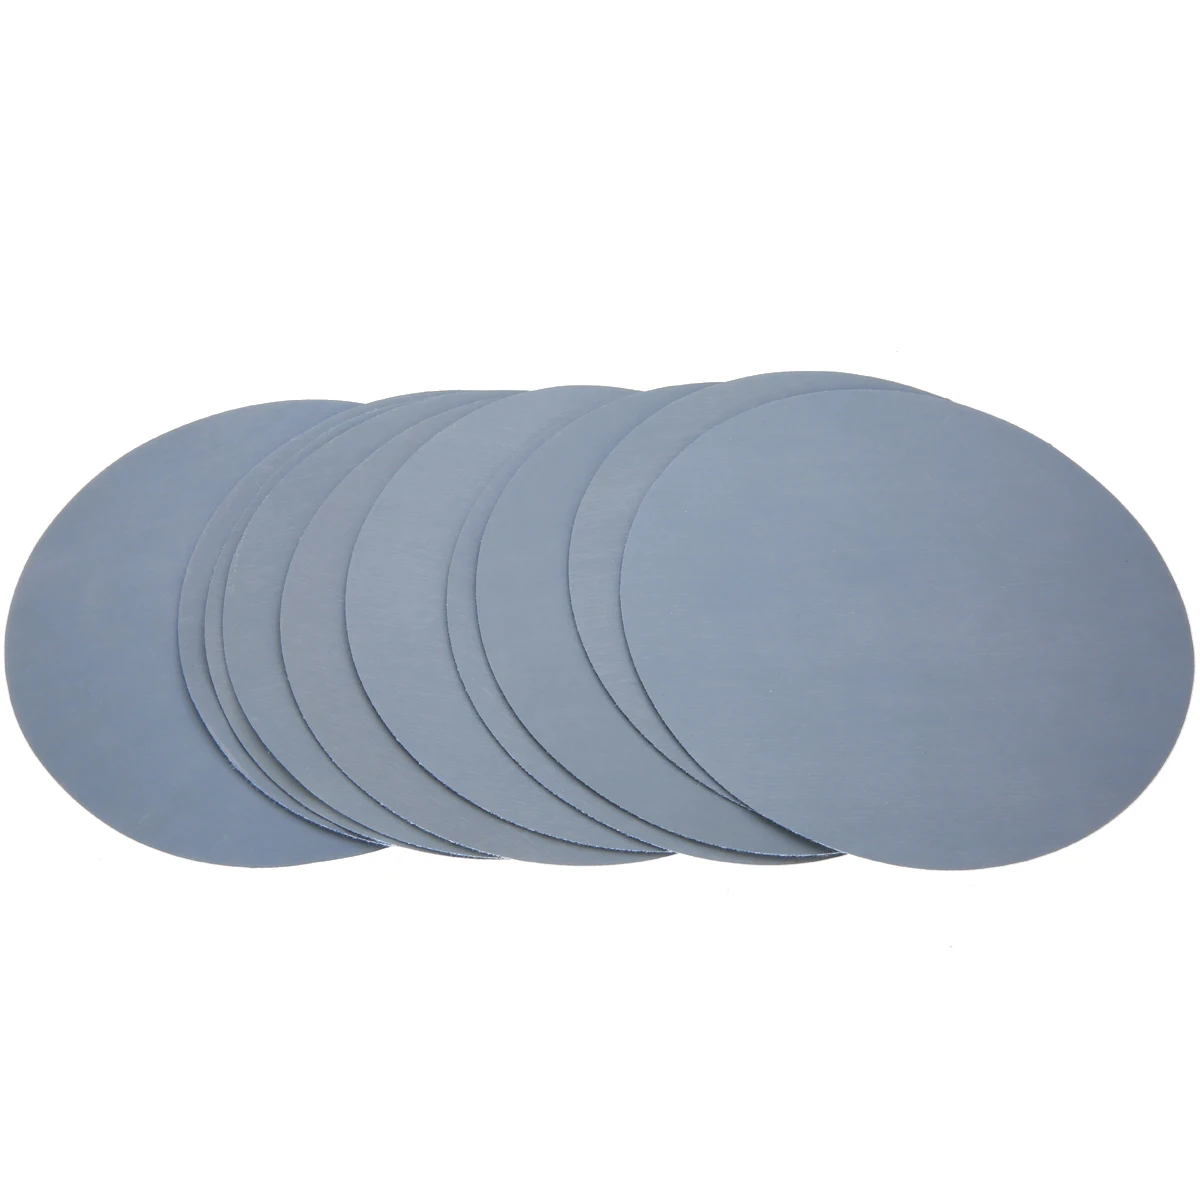 20 шт. 6 "3000 Грит много шлифования полировка дисков шлифовальные мм 150 мм Pad Деревообработка наждачная бумага